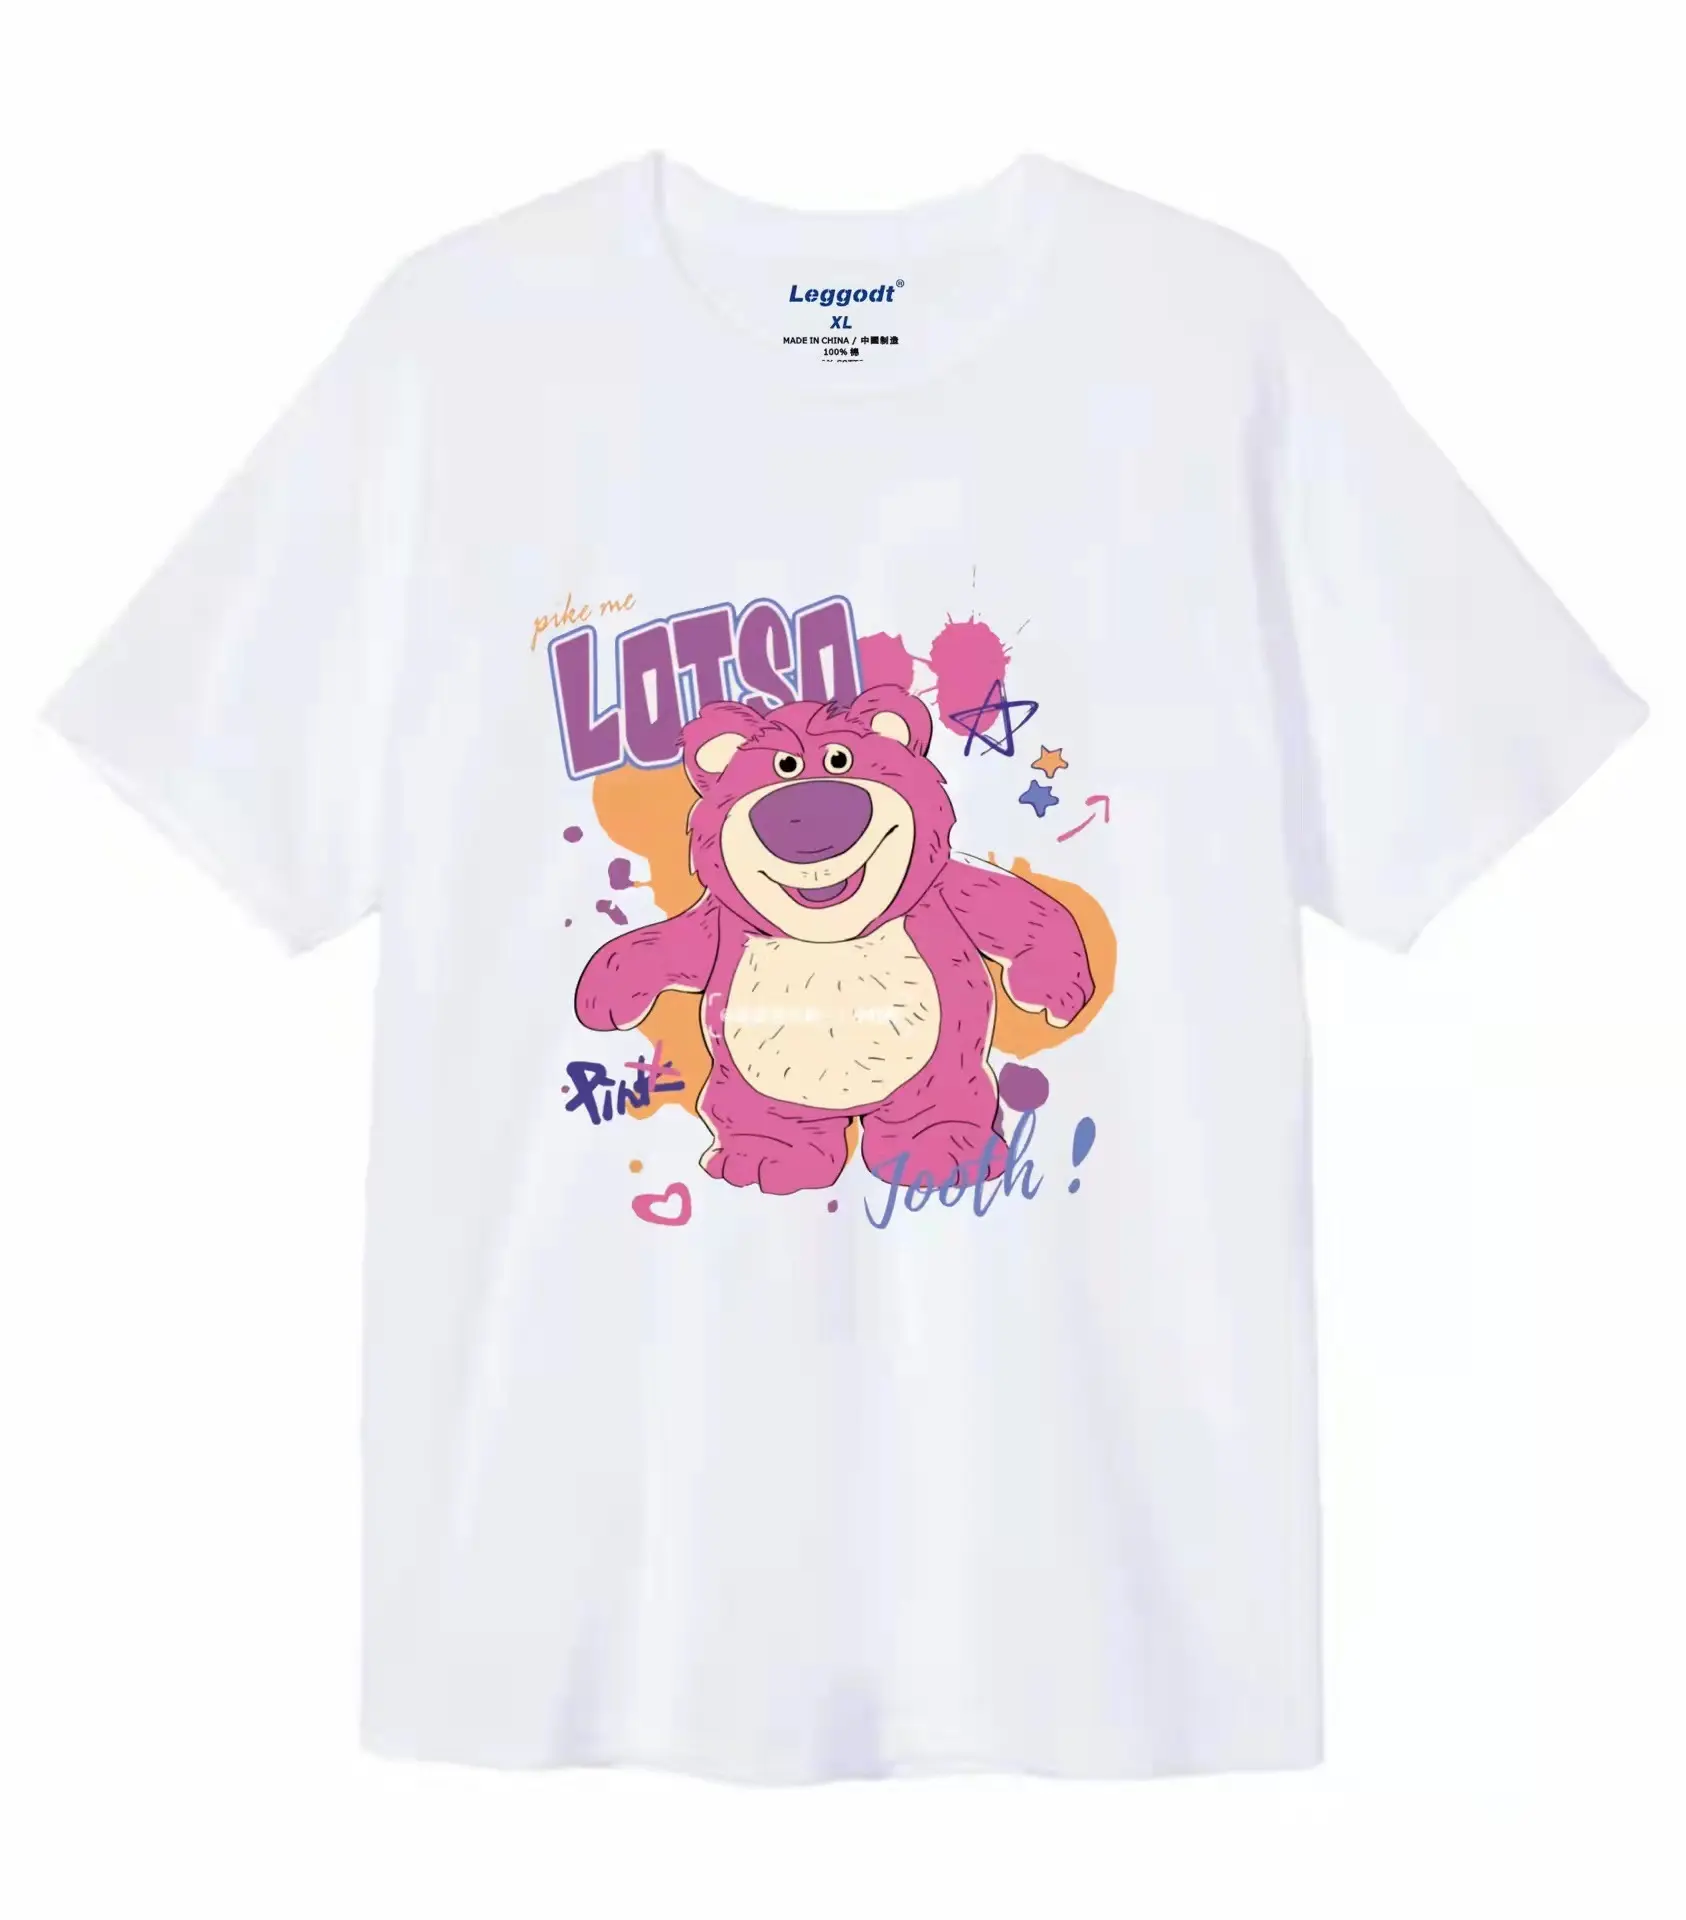 Camiseta feminina de algodão 100% algodão, alta qualidade, estampa de doce rosa, ursos, gráfico